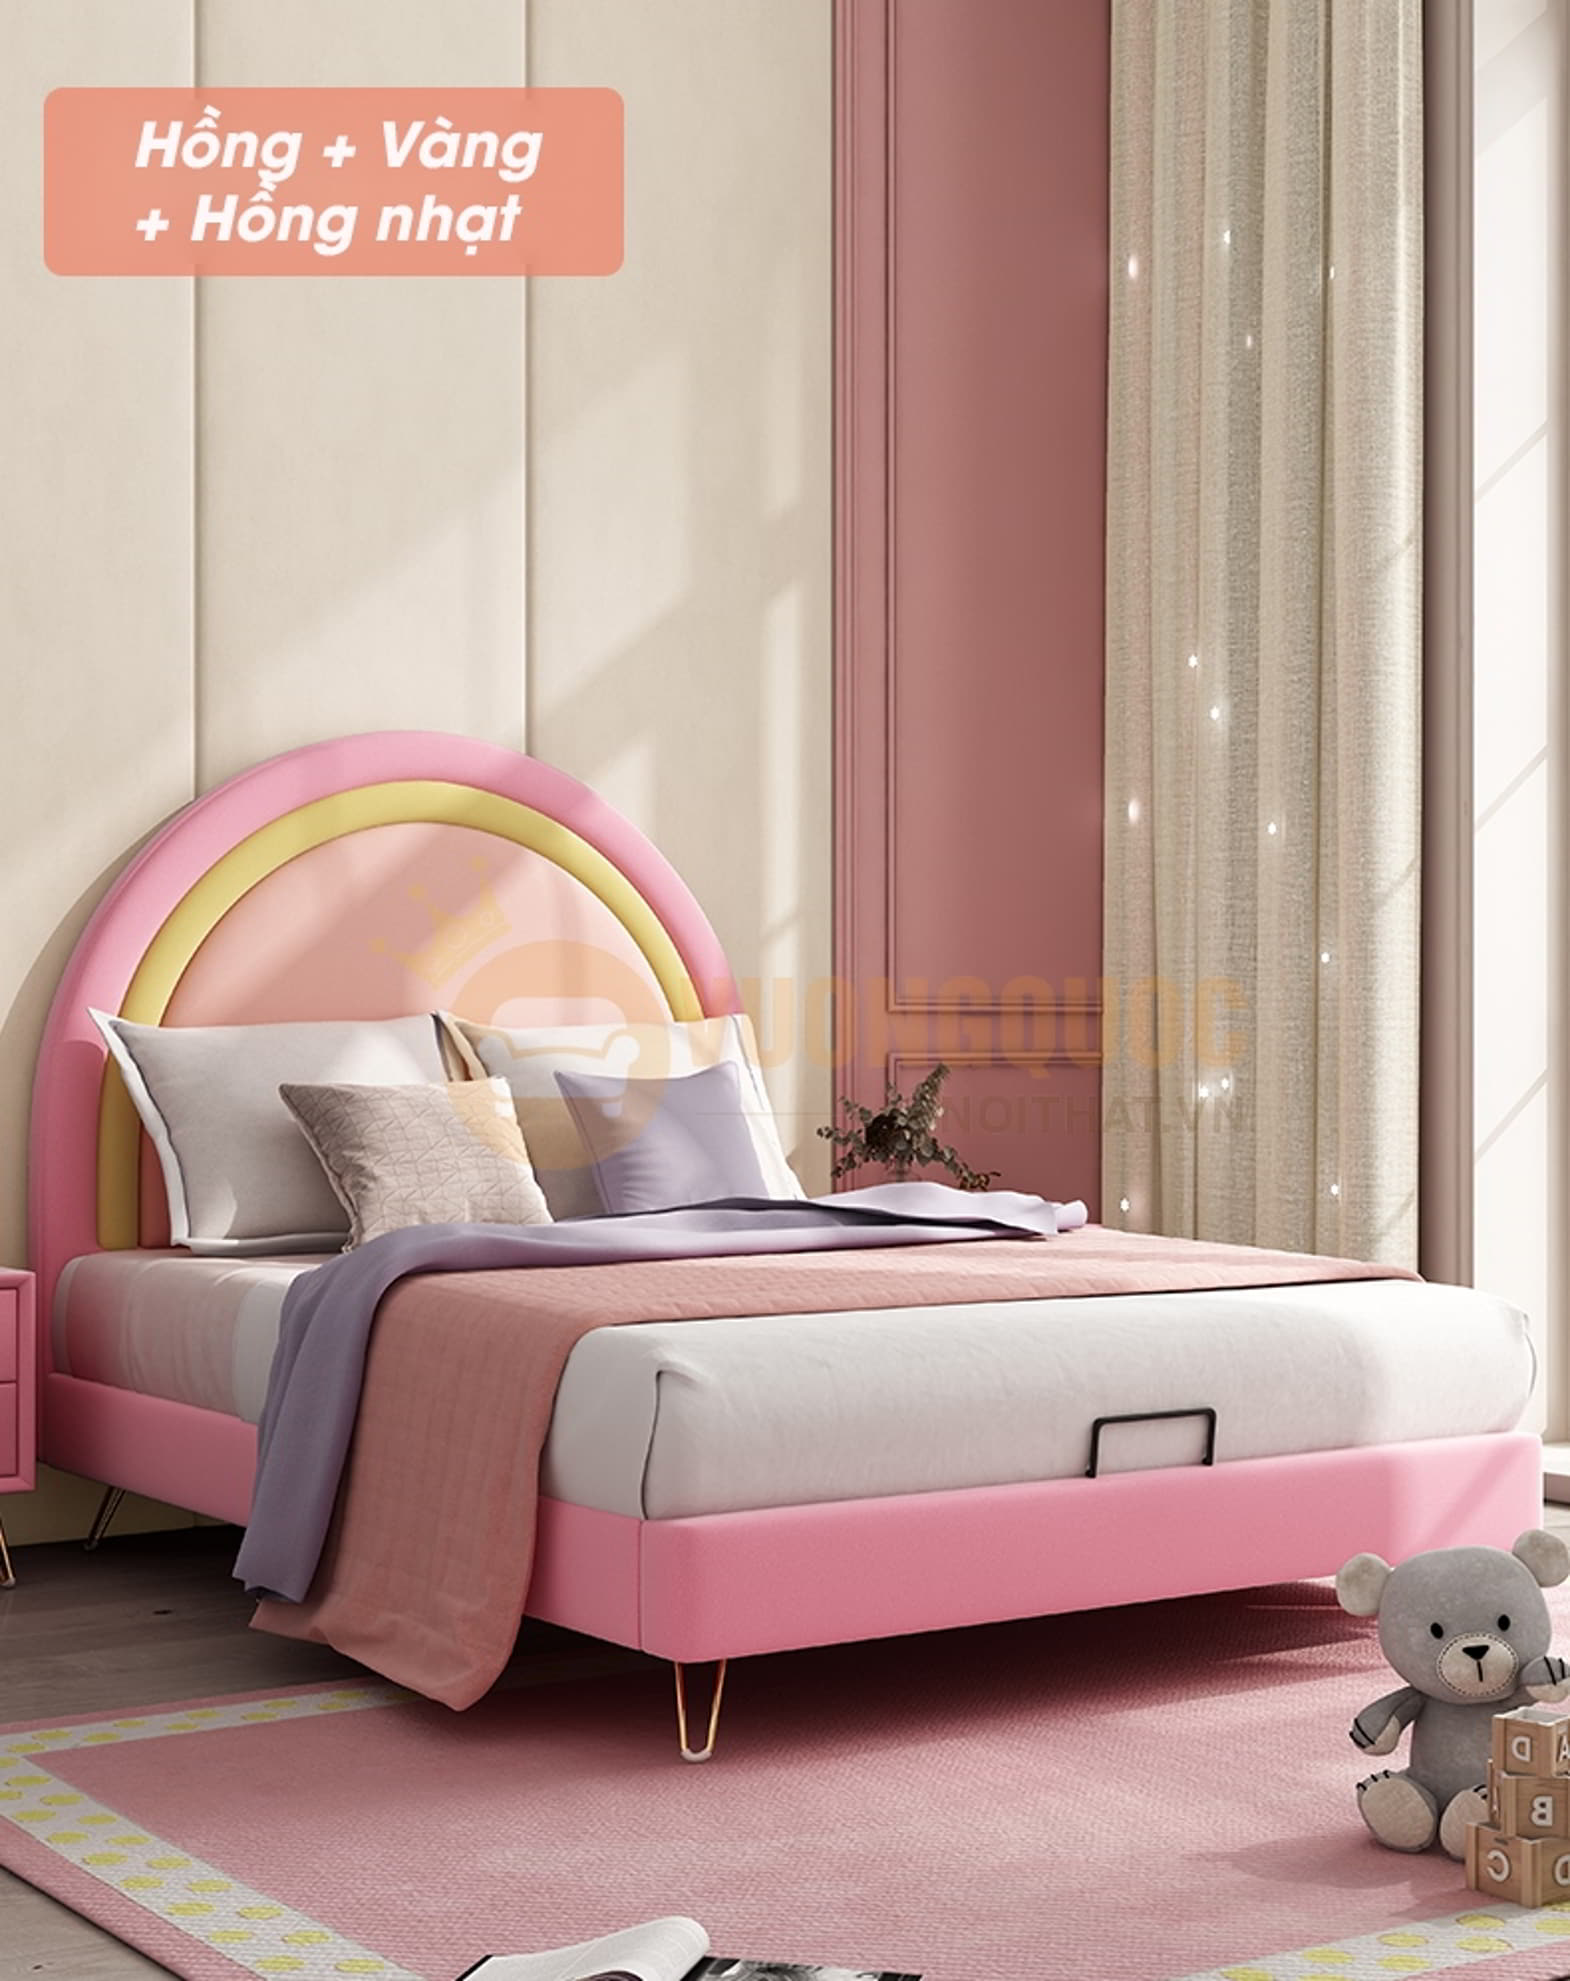 Phòng ngủ màu hồng kết hợp cùng gam màu khác tạo nên phòng ngủ cực kỳ đẹp